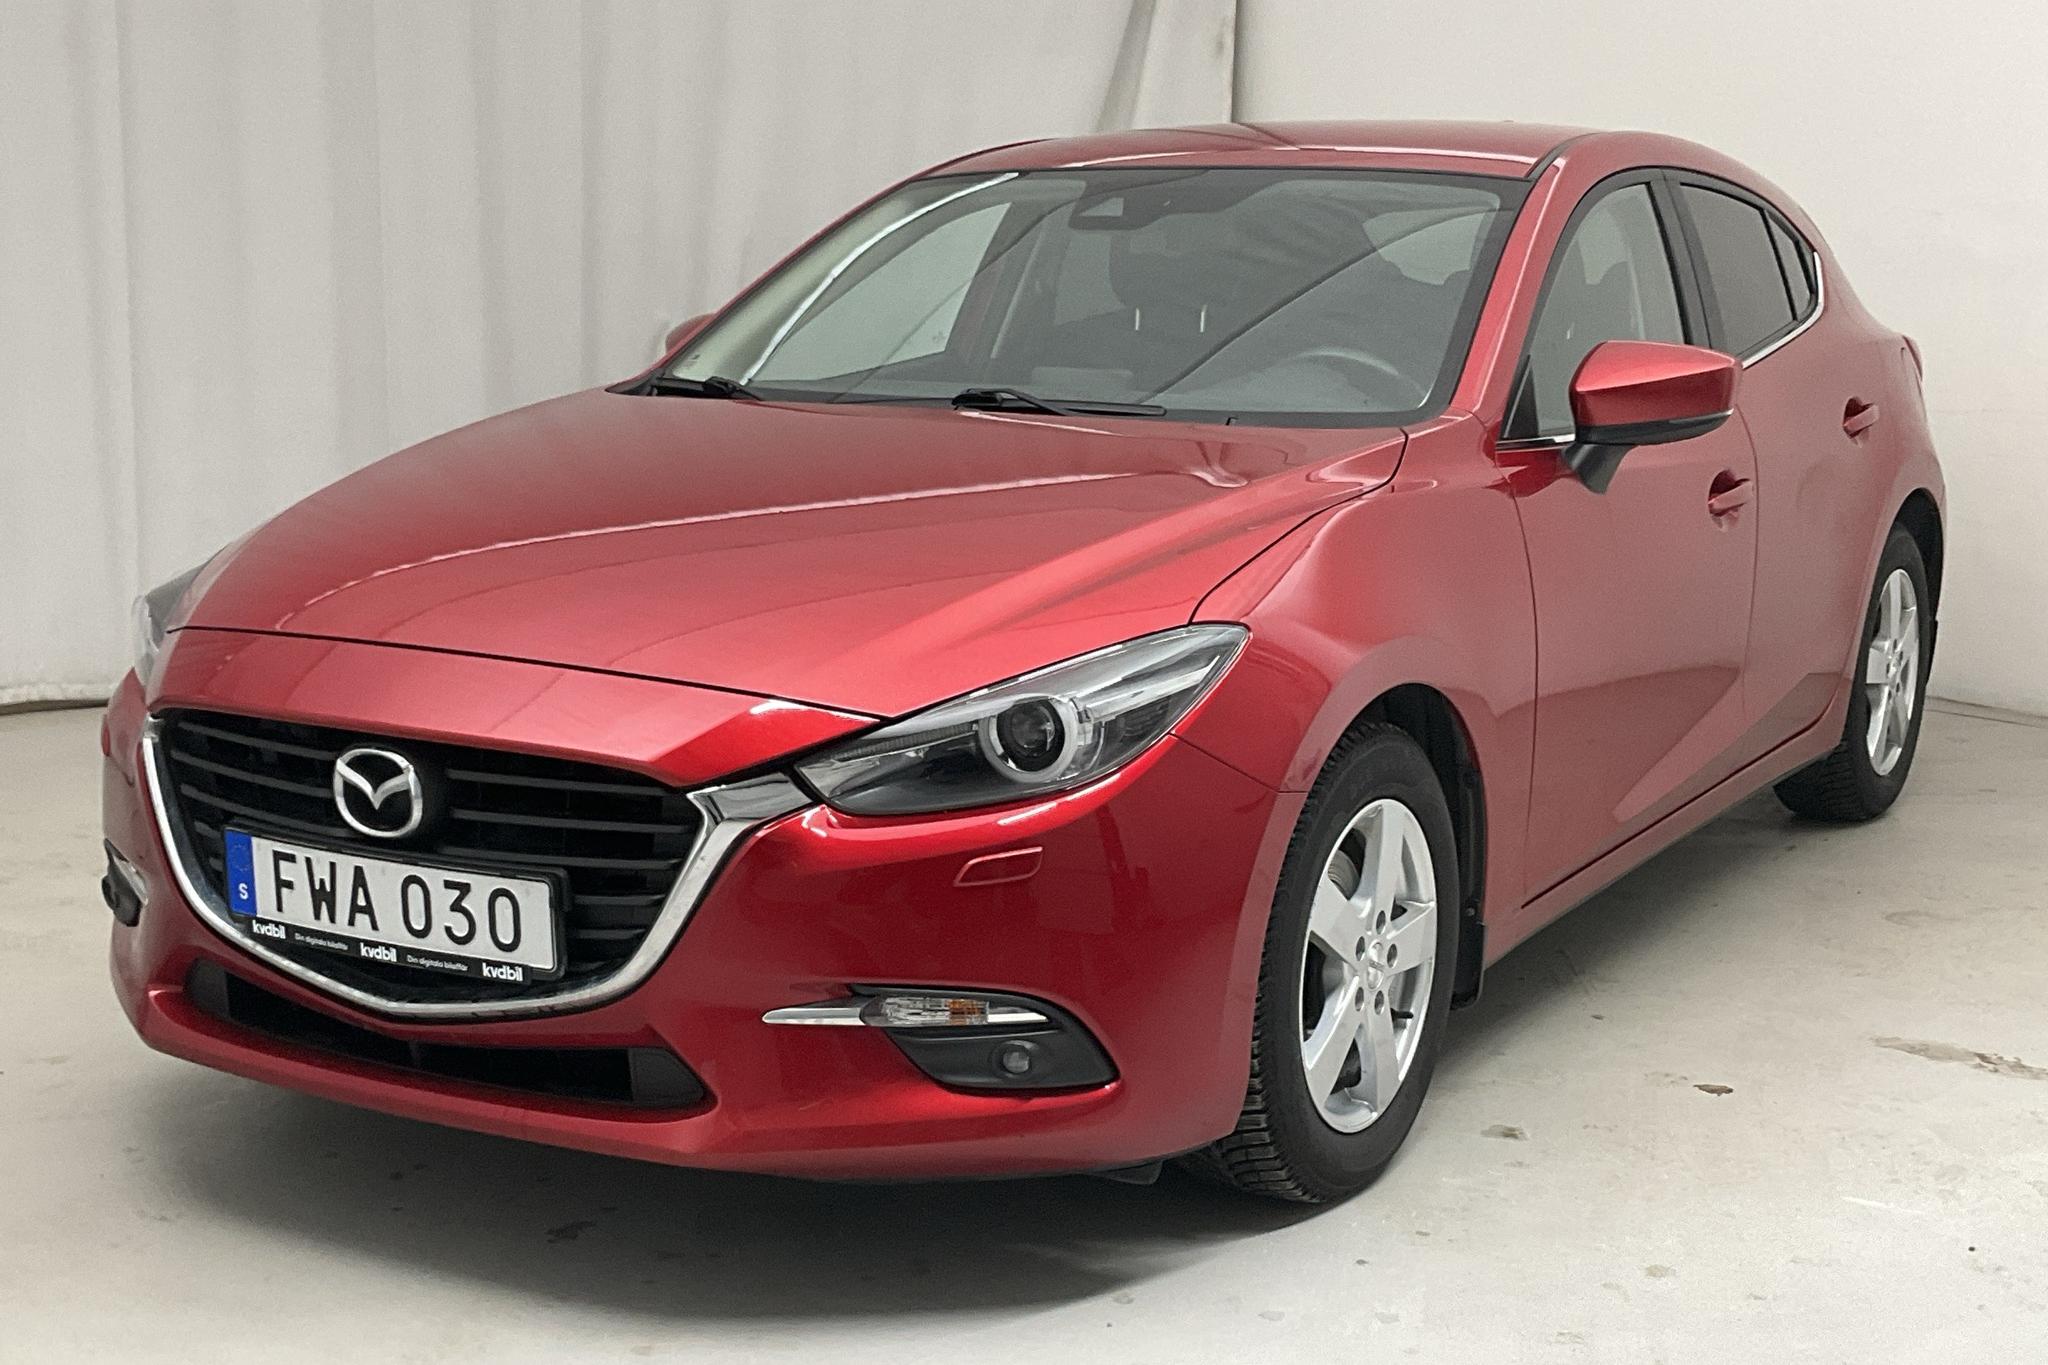 Mazda 3 2.0 5dr (120hk) - 6 982 mil - Automat - röd - 2018